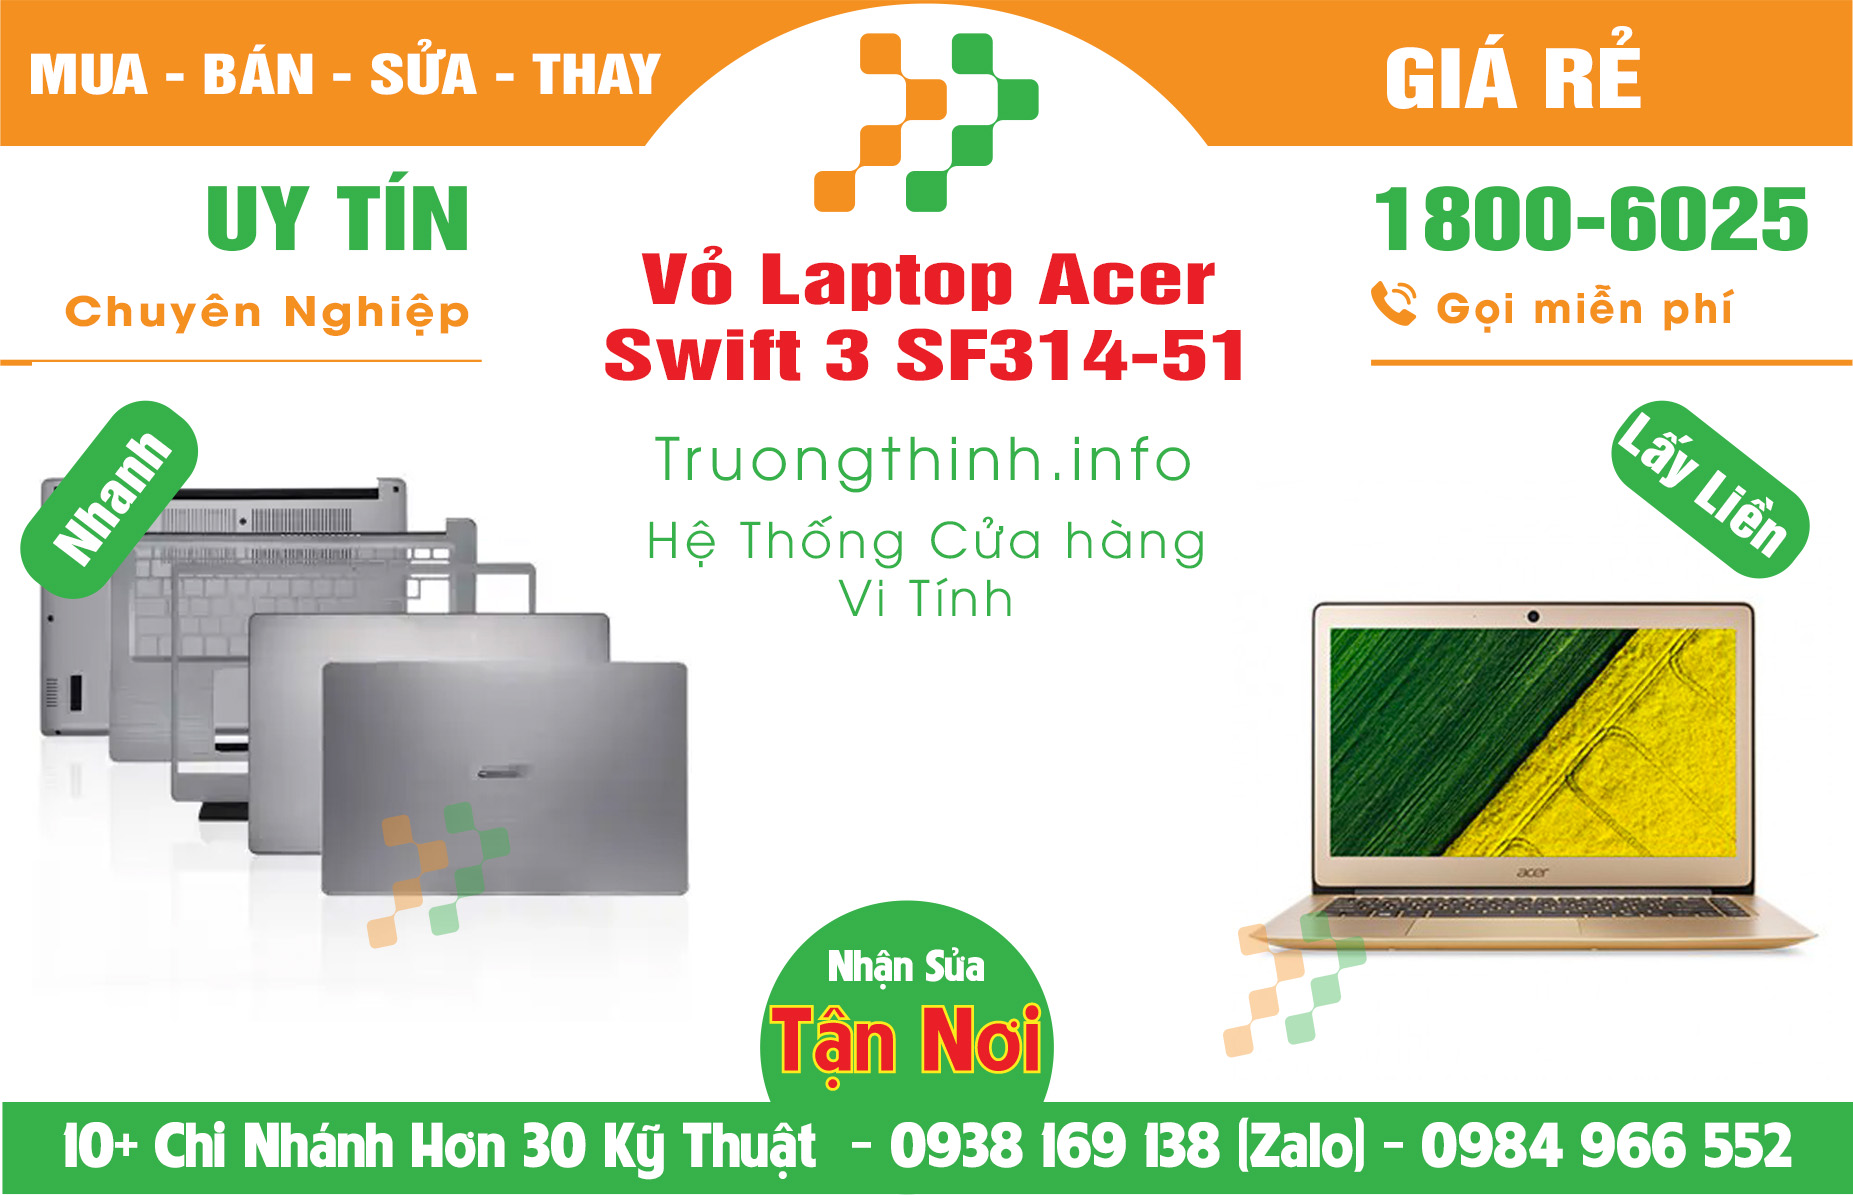 Mua Bán Vỏ Laptop Acer Swift 3 SF314-51 Giá Rẻ | Máy Tính Trường Thịnh Giá Rẻ